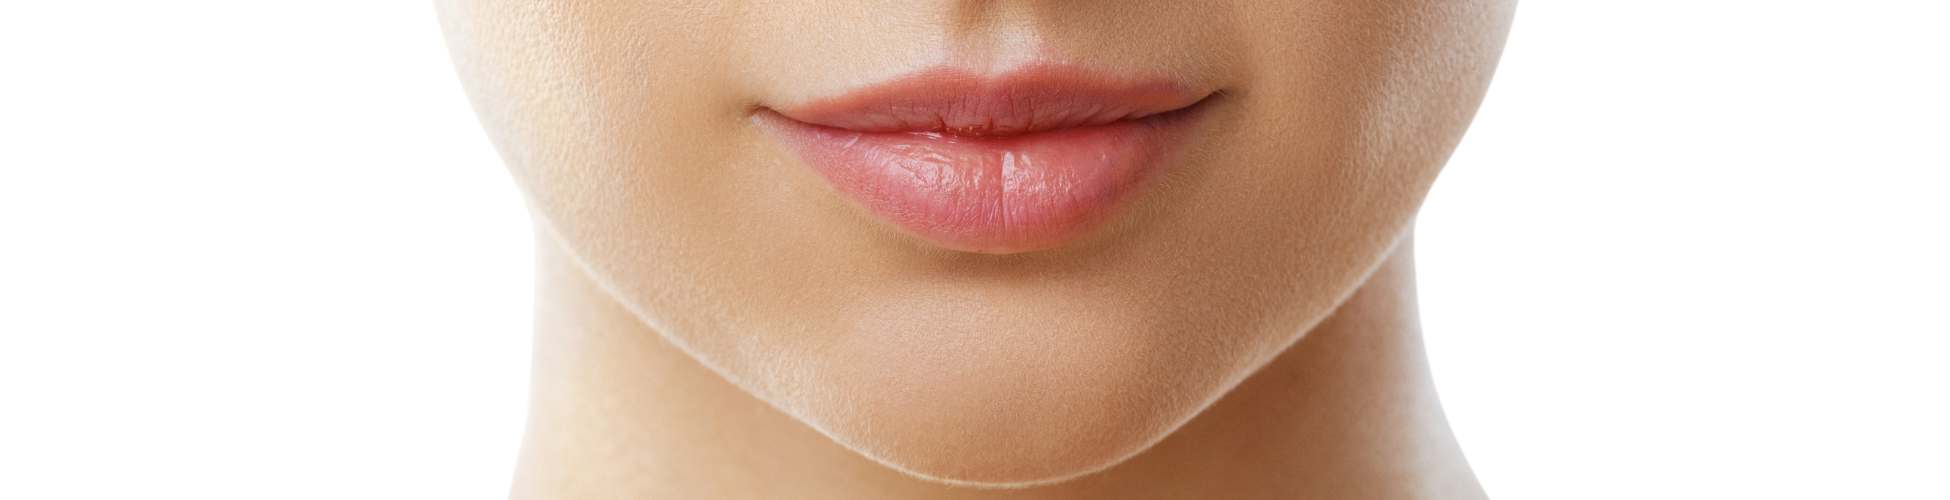 precio del aumento aumento de labios en la clínica de medicina estética IME